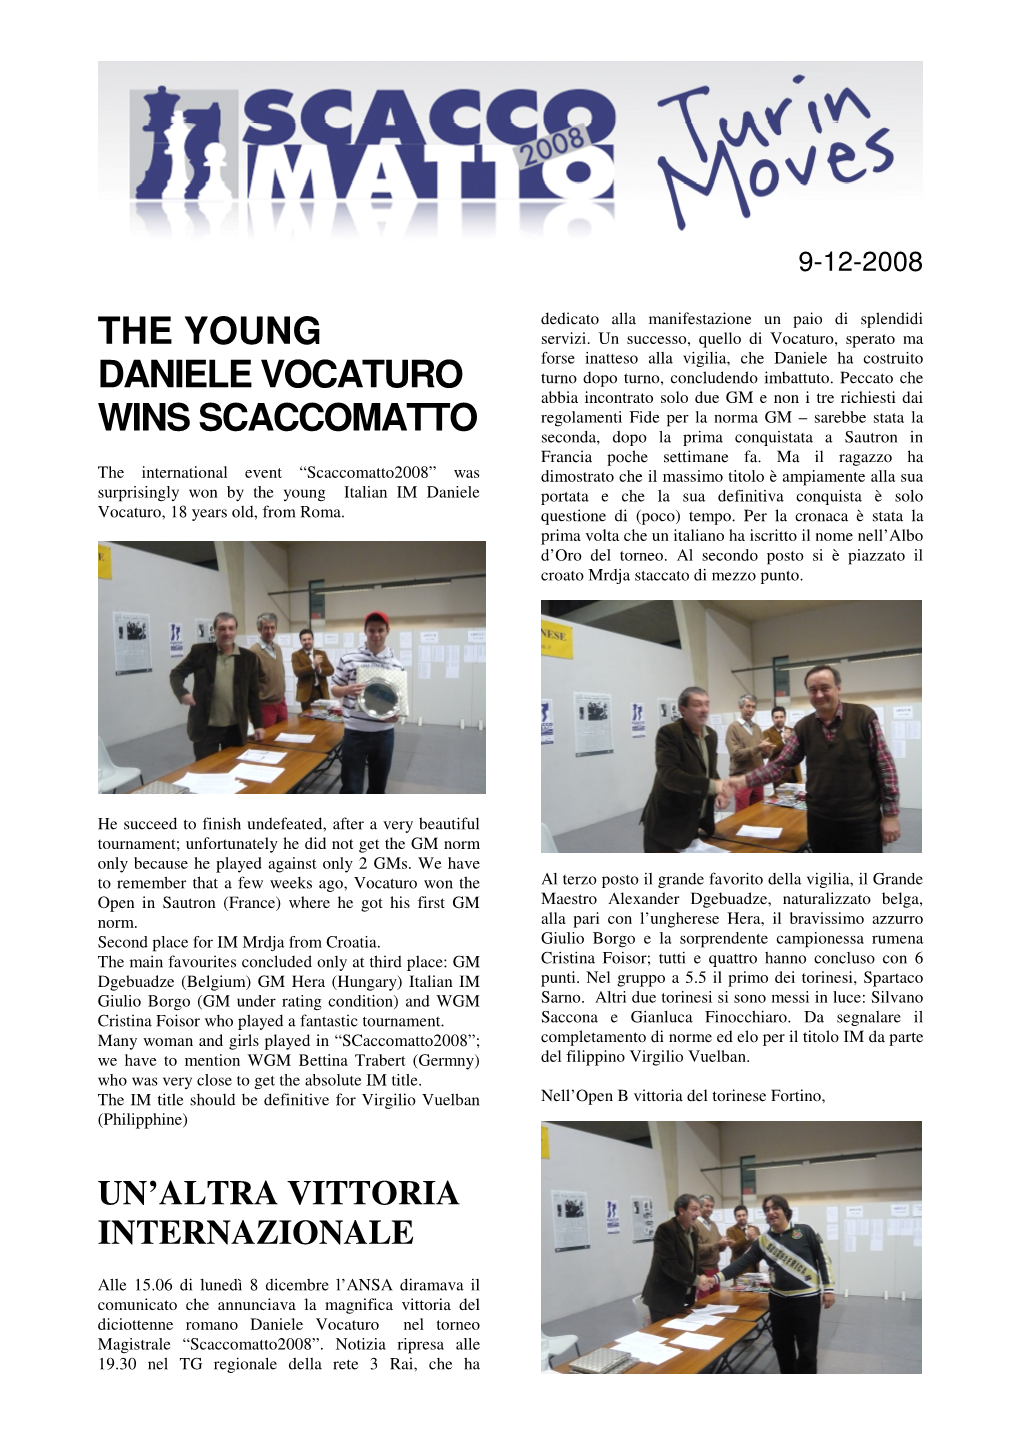 The Young Daniele Vocaturo Wins Scaccomatto